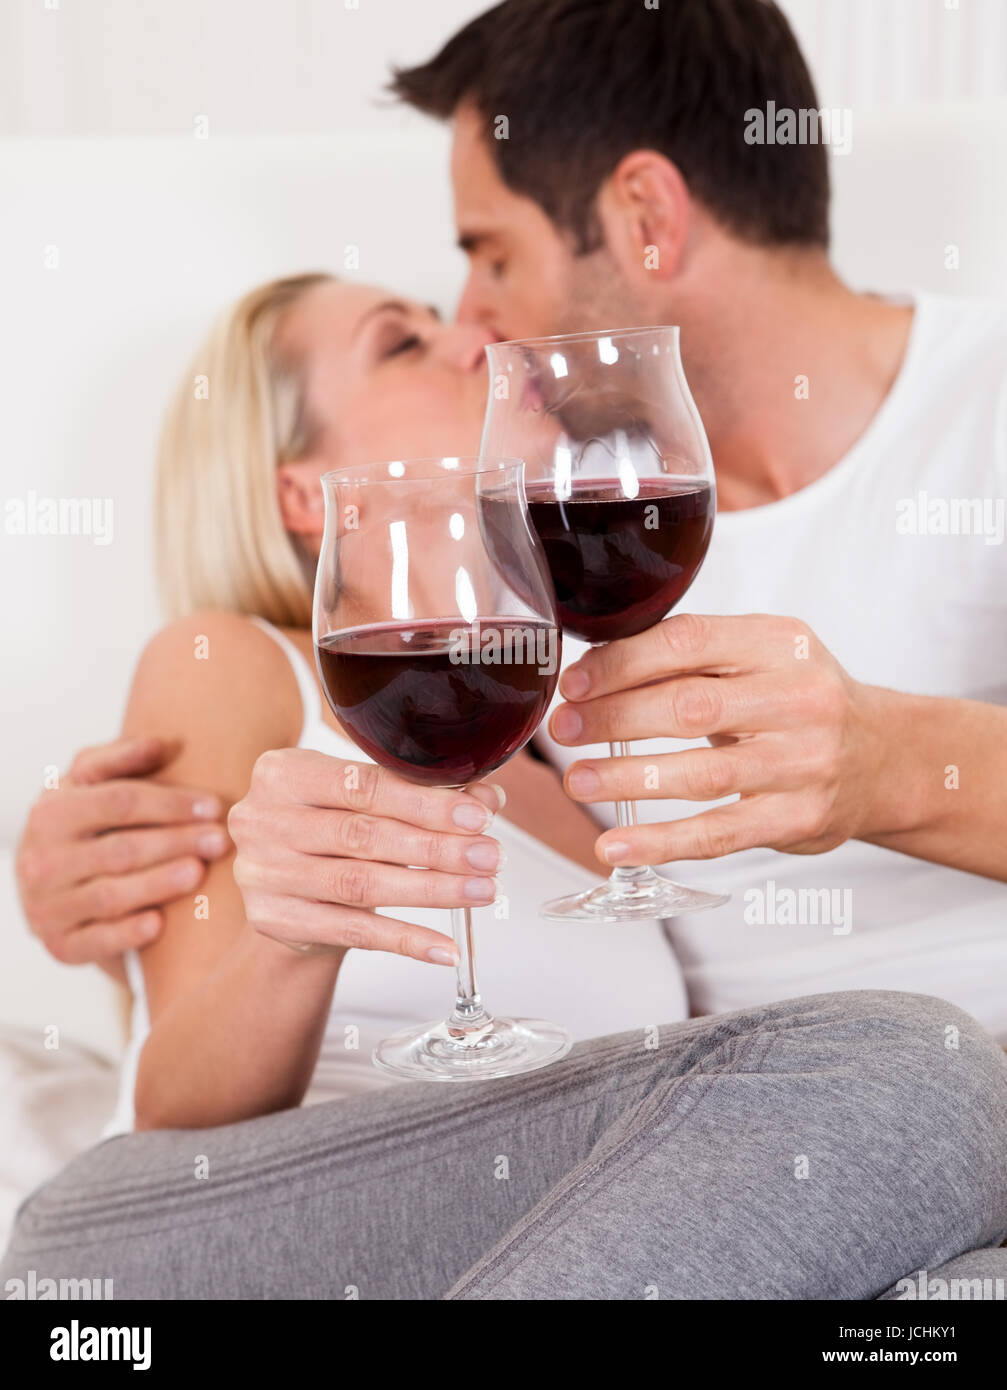 Выпить на брудершафт это. Мужчина и женщина пьют вино. Влюбленные с бокалами. Влюбленная пара с вином. Мужчина и женщина с бокалами шампанского.